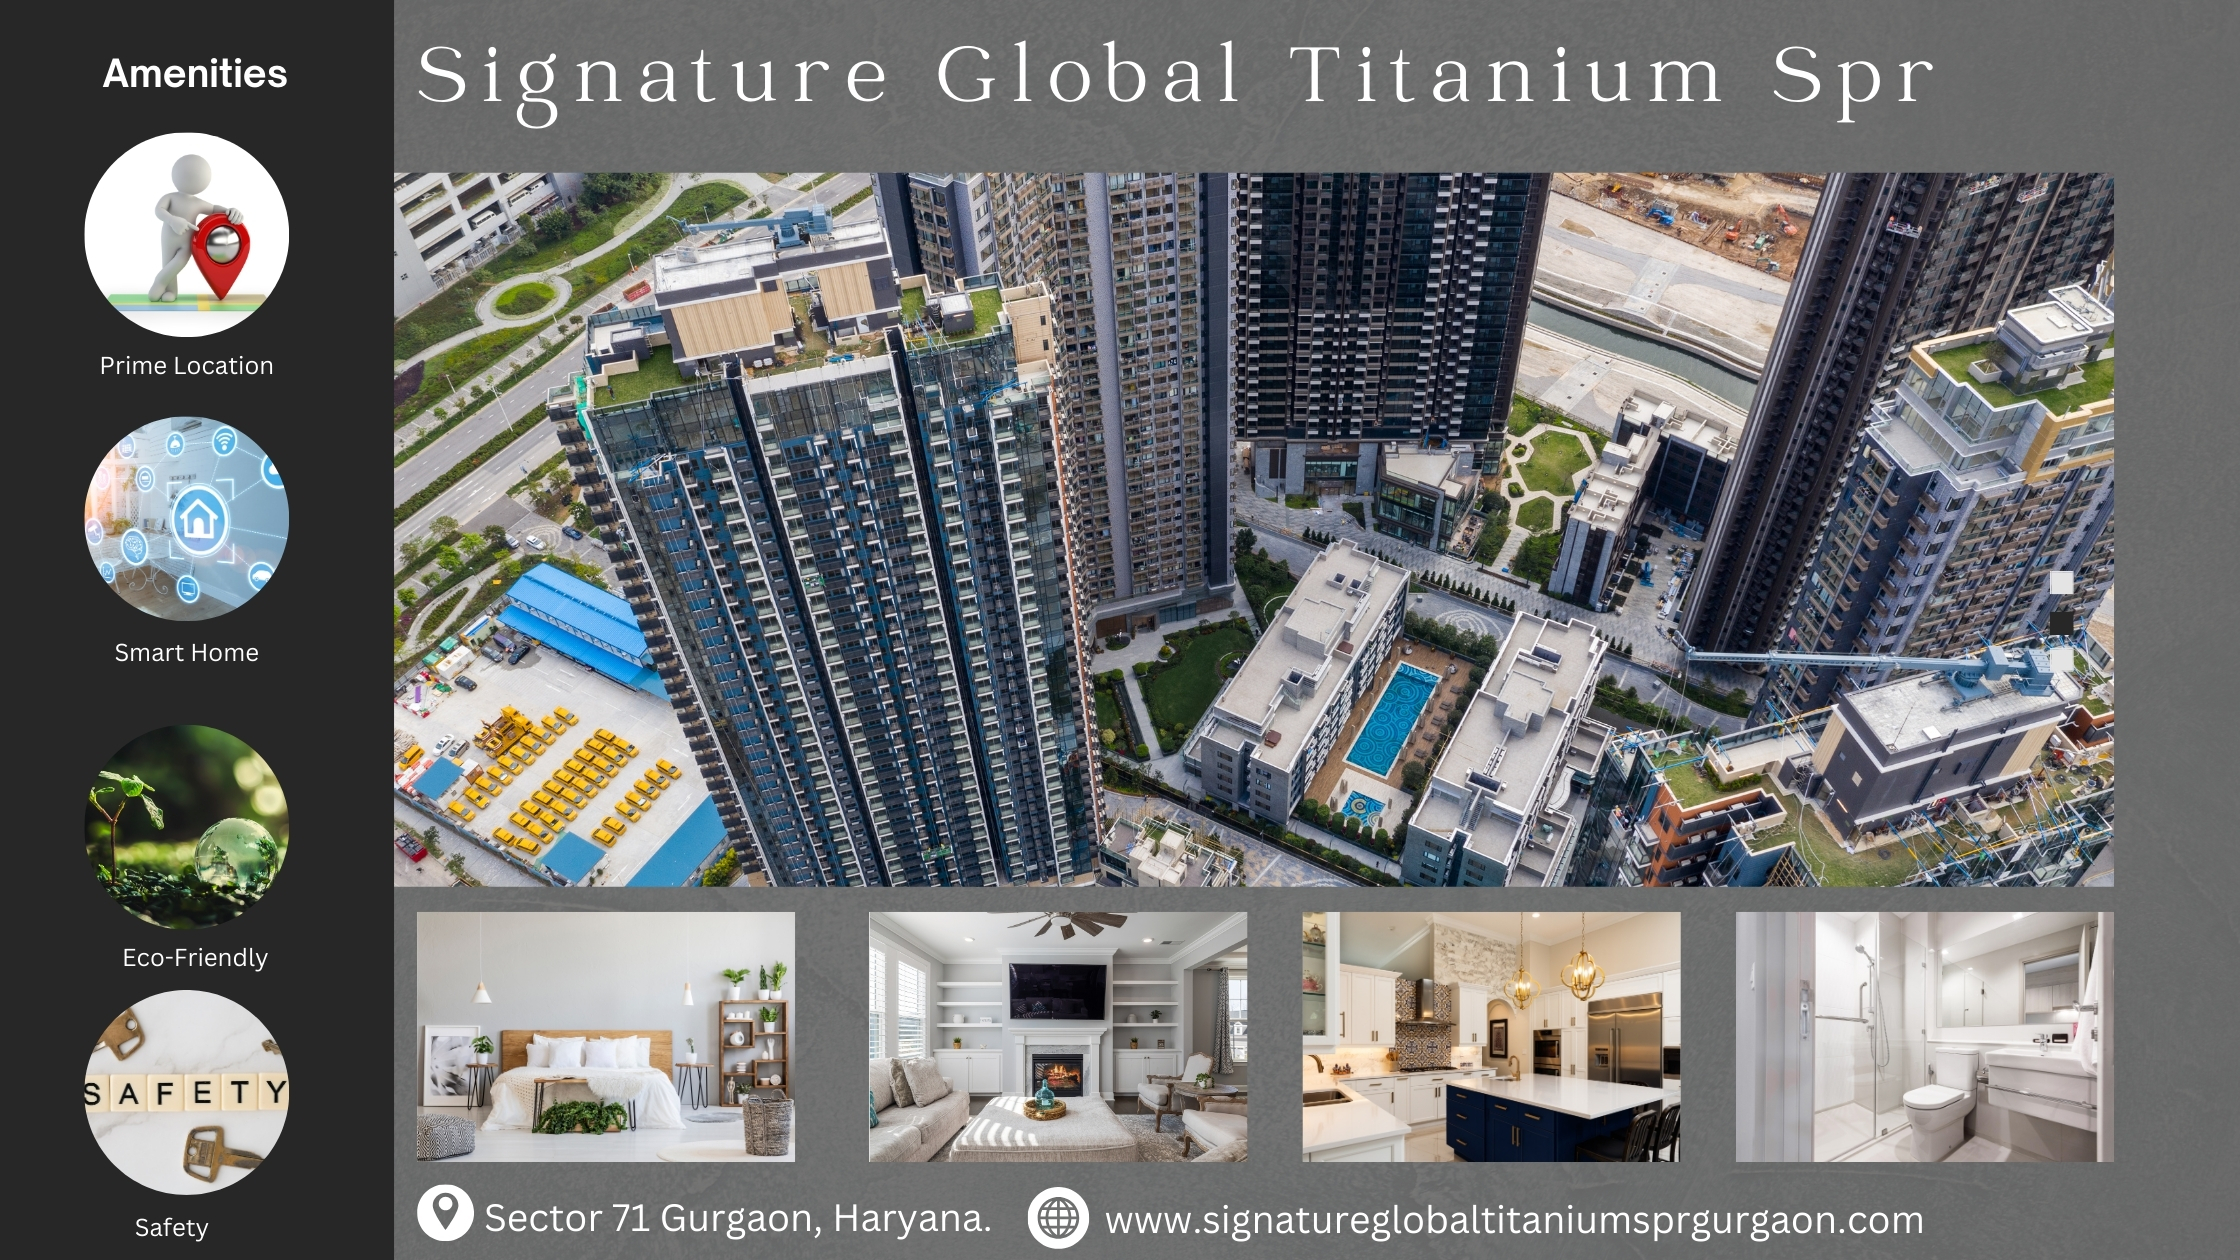 Signature Global Titanium SPR – Flats for Smart Investment